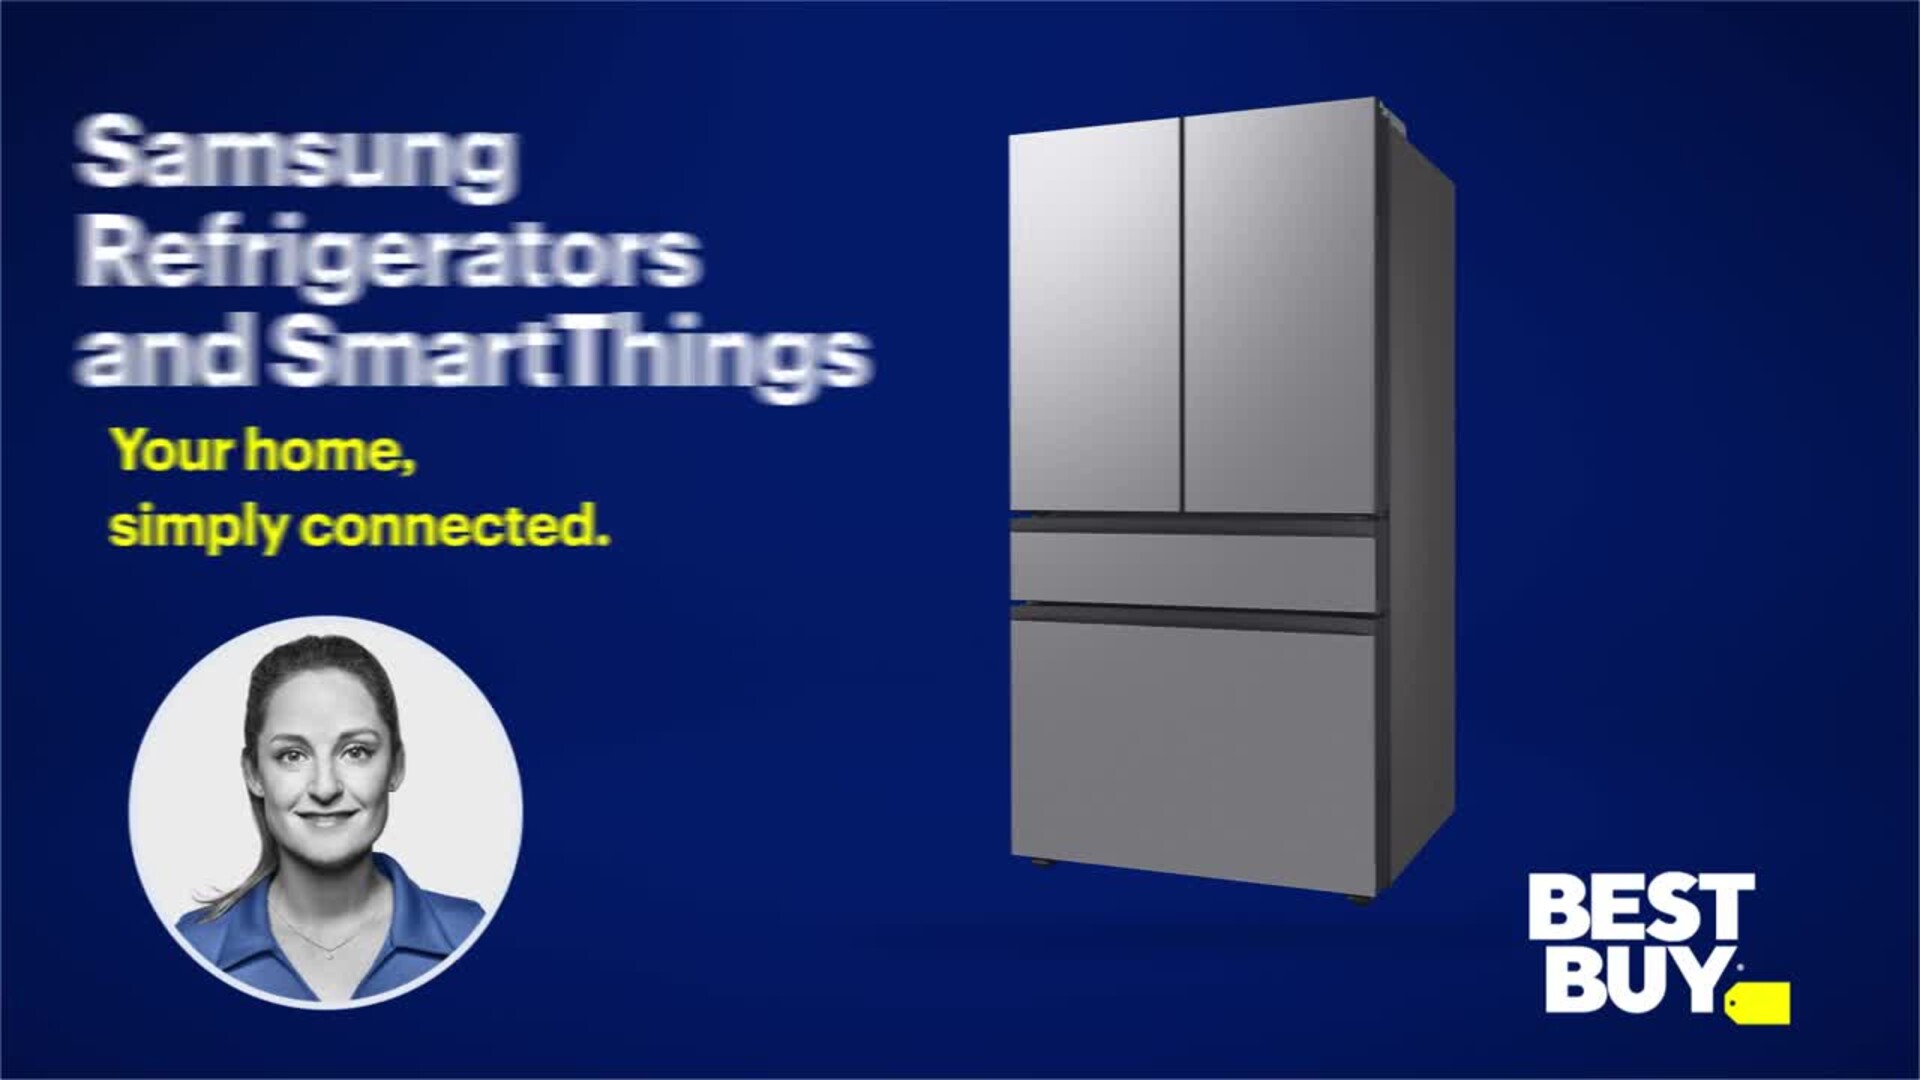 Shop Samsung Bespoke 4-Door French Door Standard-Depth Refrigerator  Includes Door Within Door & Electric Air Fry Range Suite in White Glass at